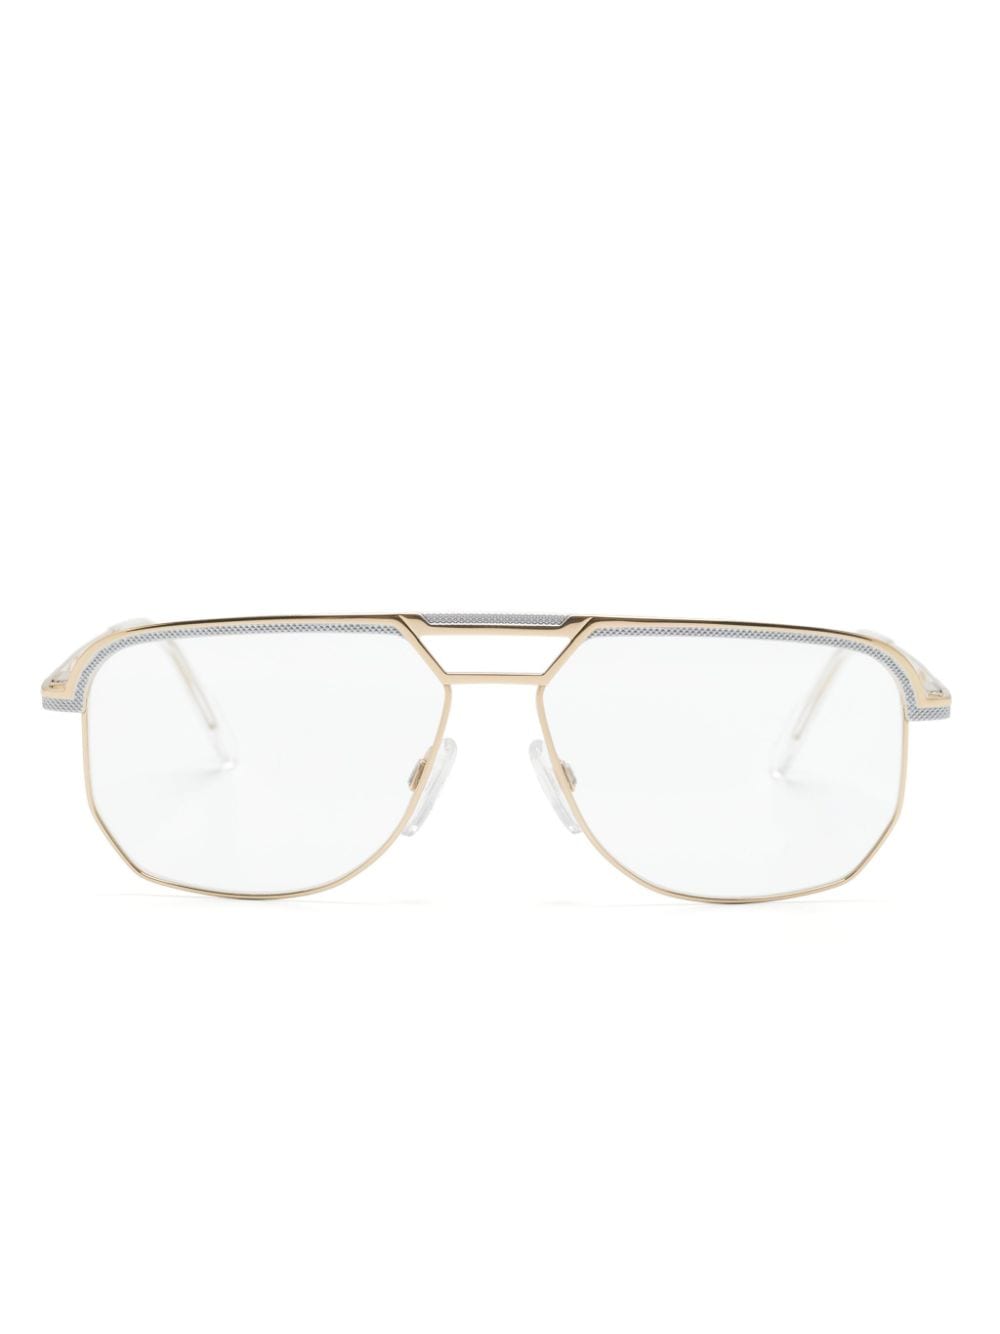 7101 pilot-frame glasses